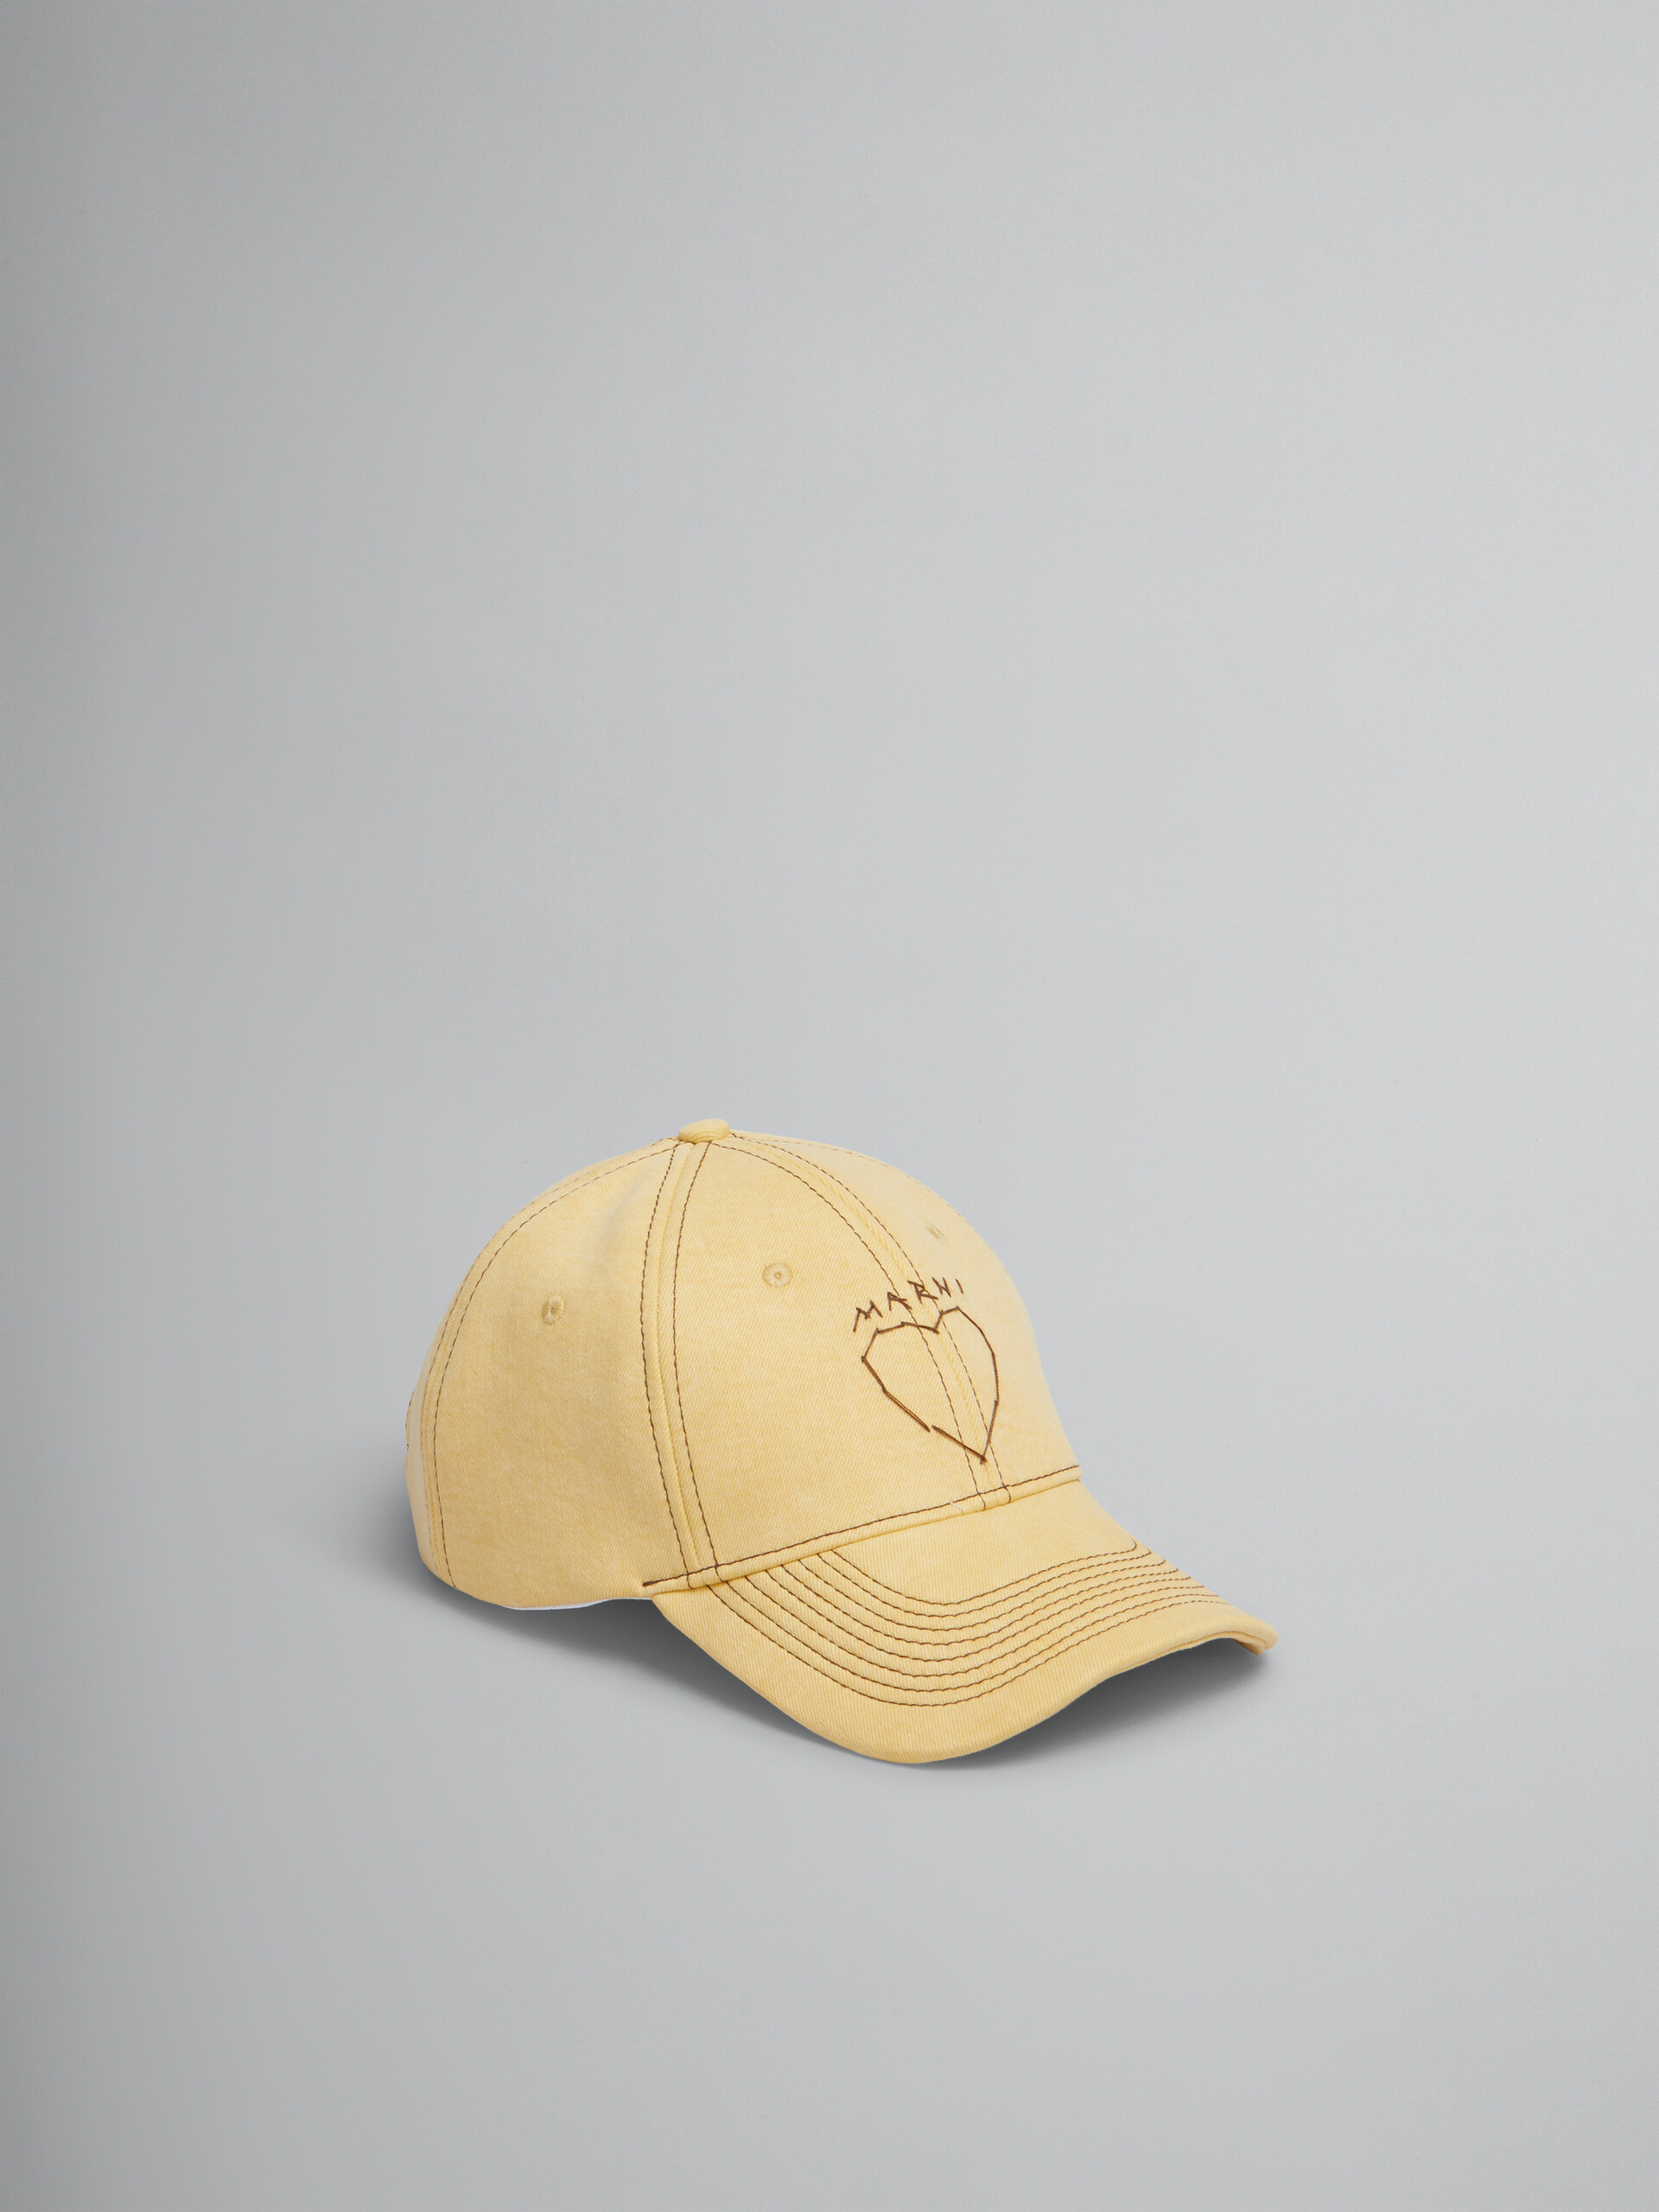 Gorra de béisbol de tejido vaquero orgánico amarilla con pespuntes Marni - Sombrero - Image 1